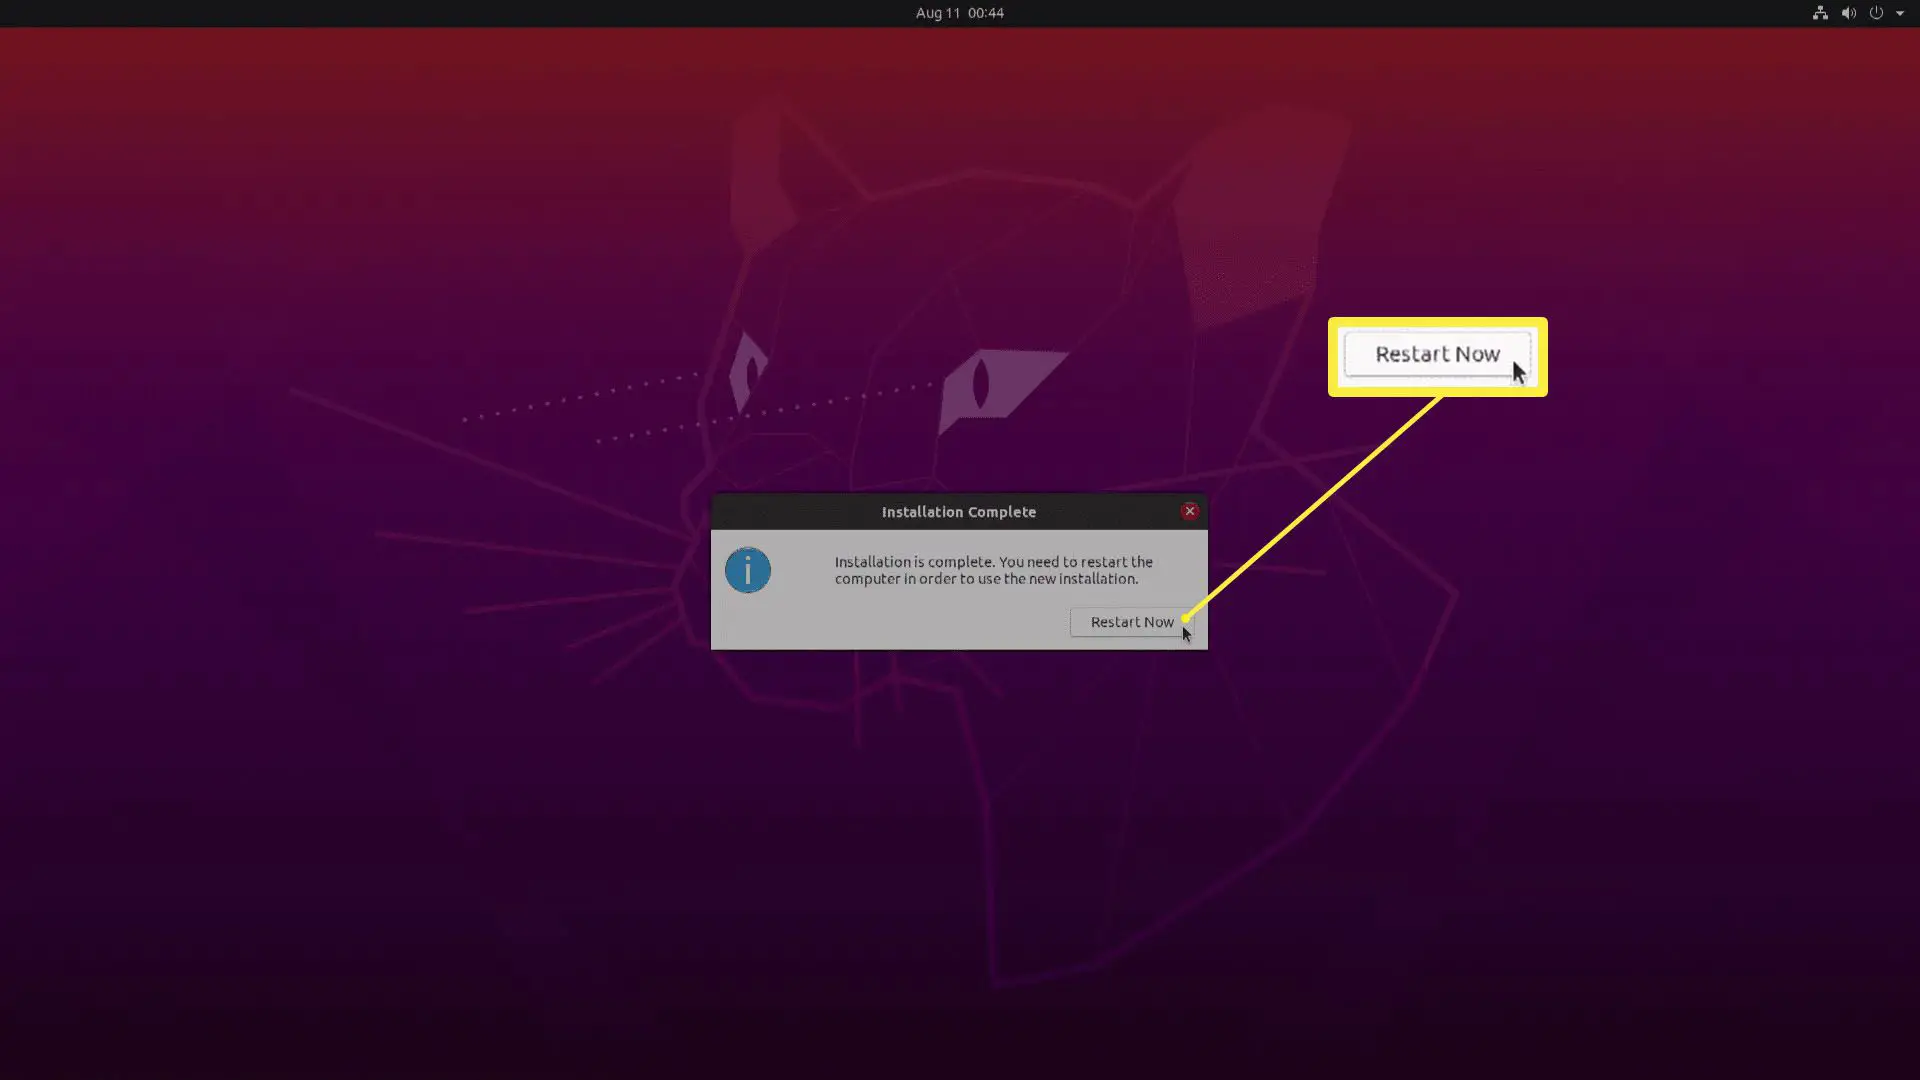 Uma captura de tela da instalação do Ubuntu.